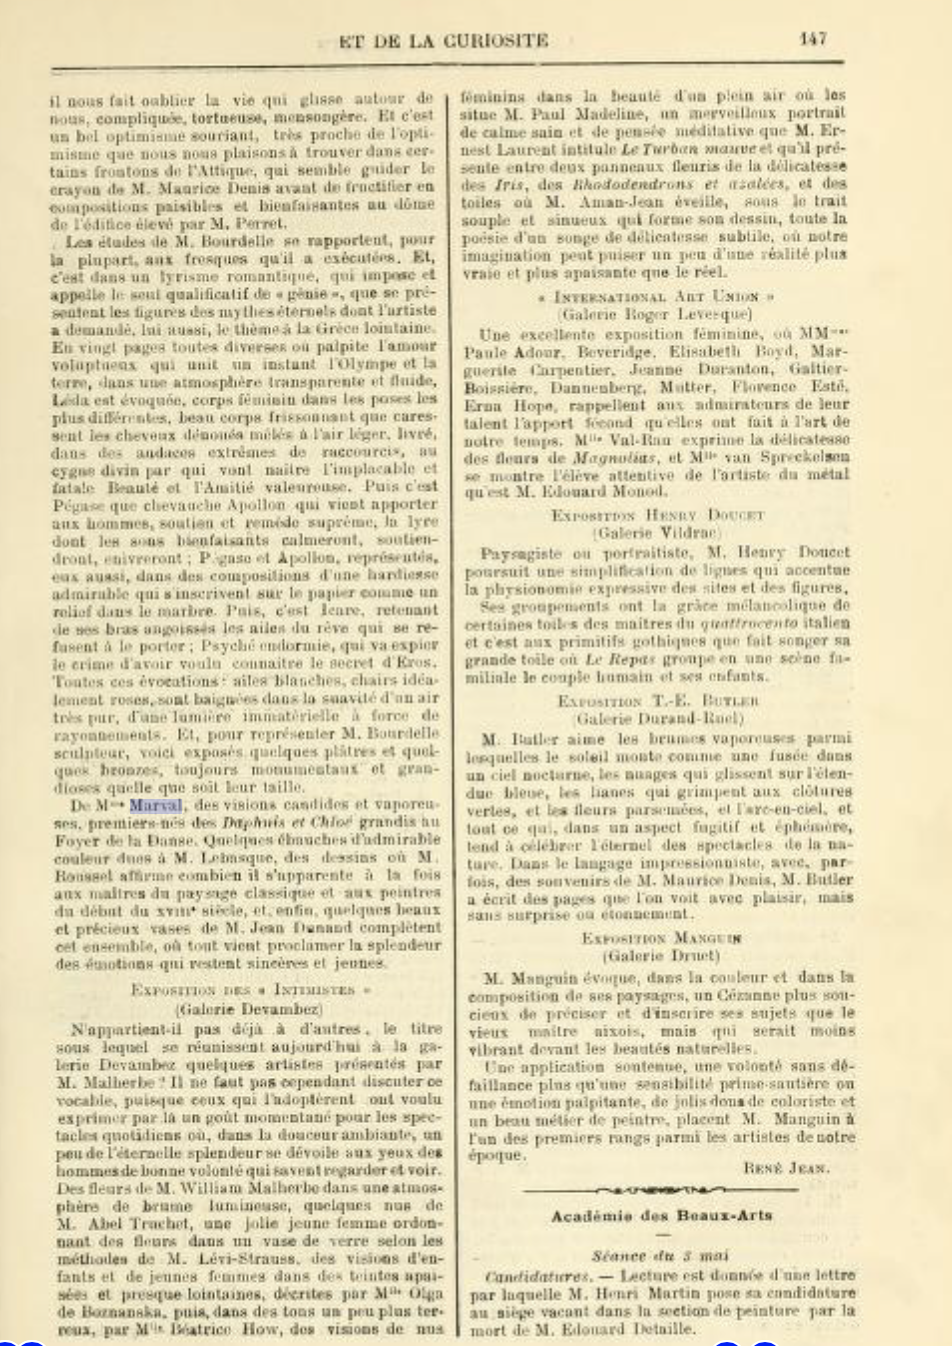 Chronique des Arts et de la Curiosité, Gazette des Beaux-Arts, mai 1913 (Copy)